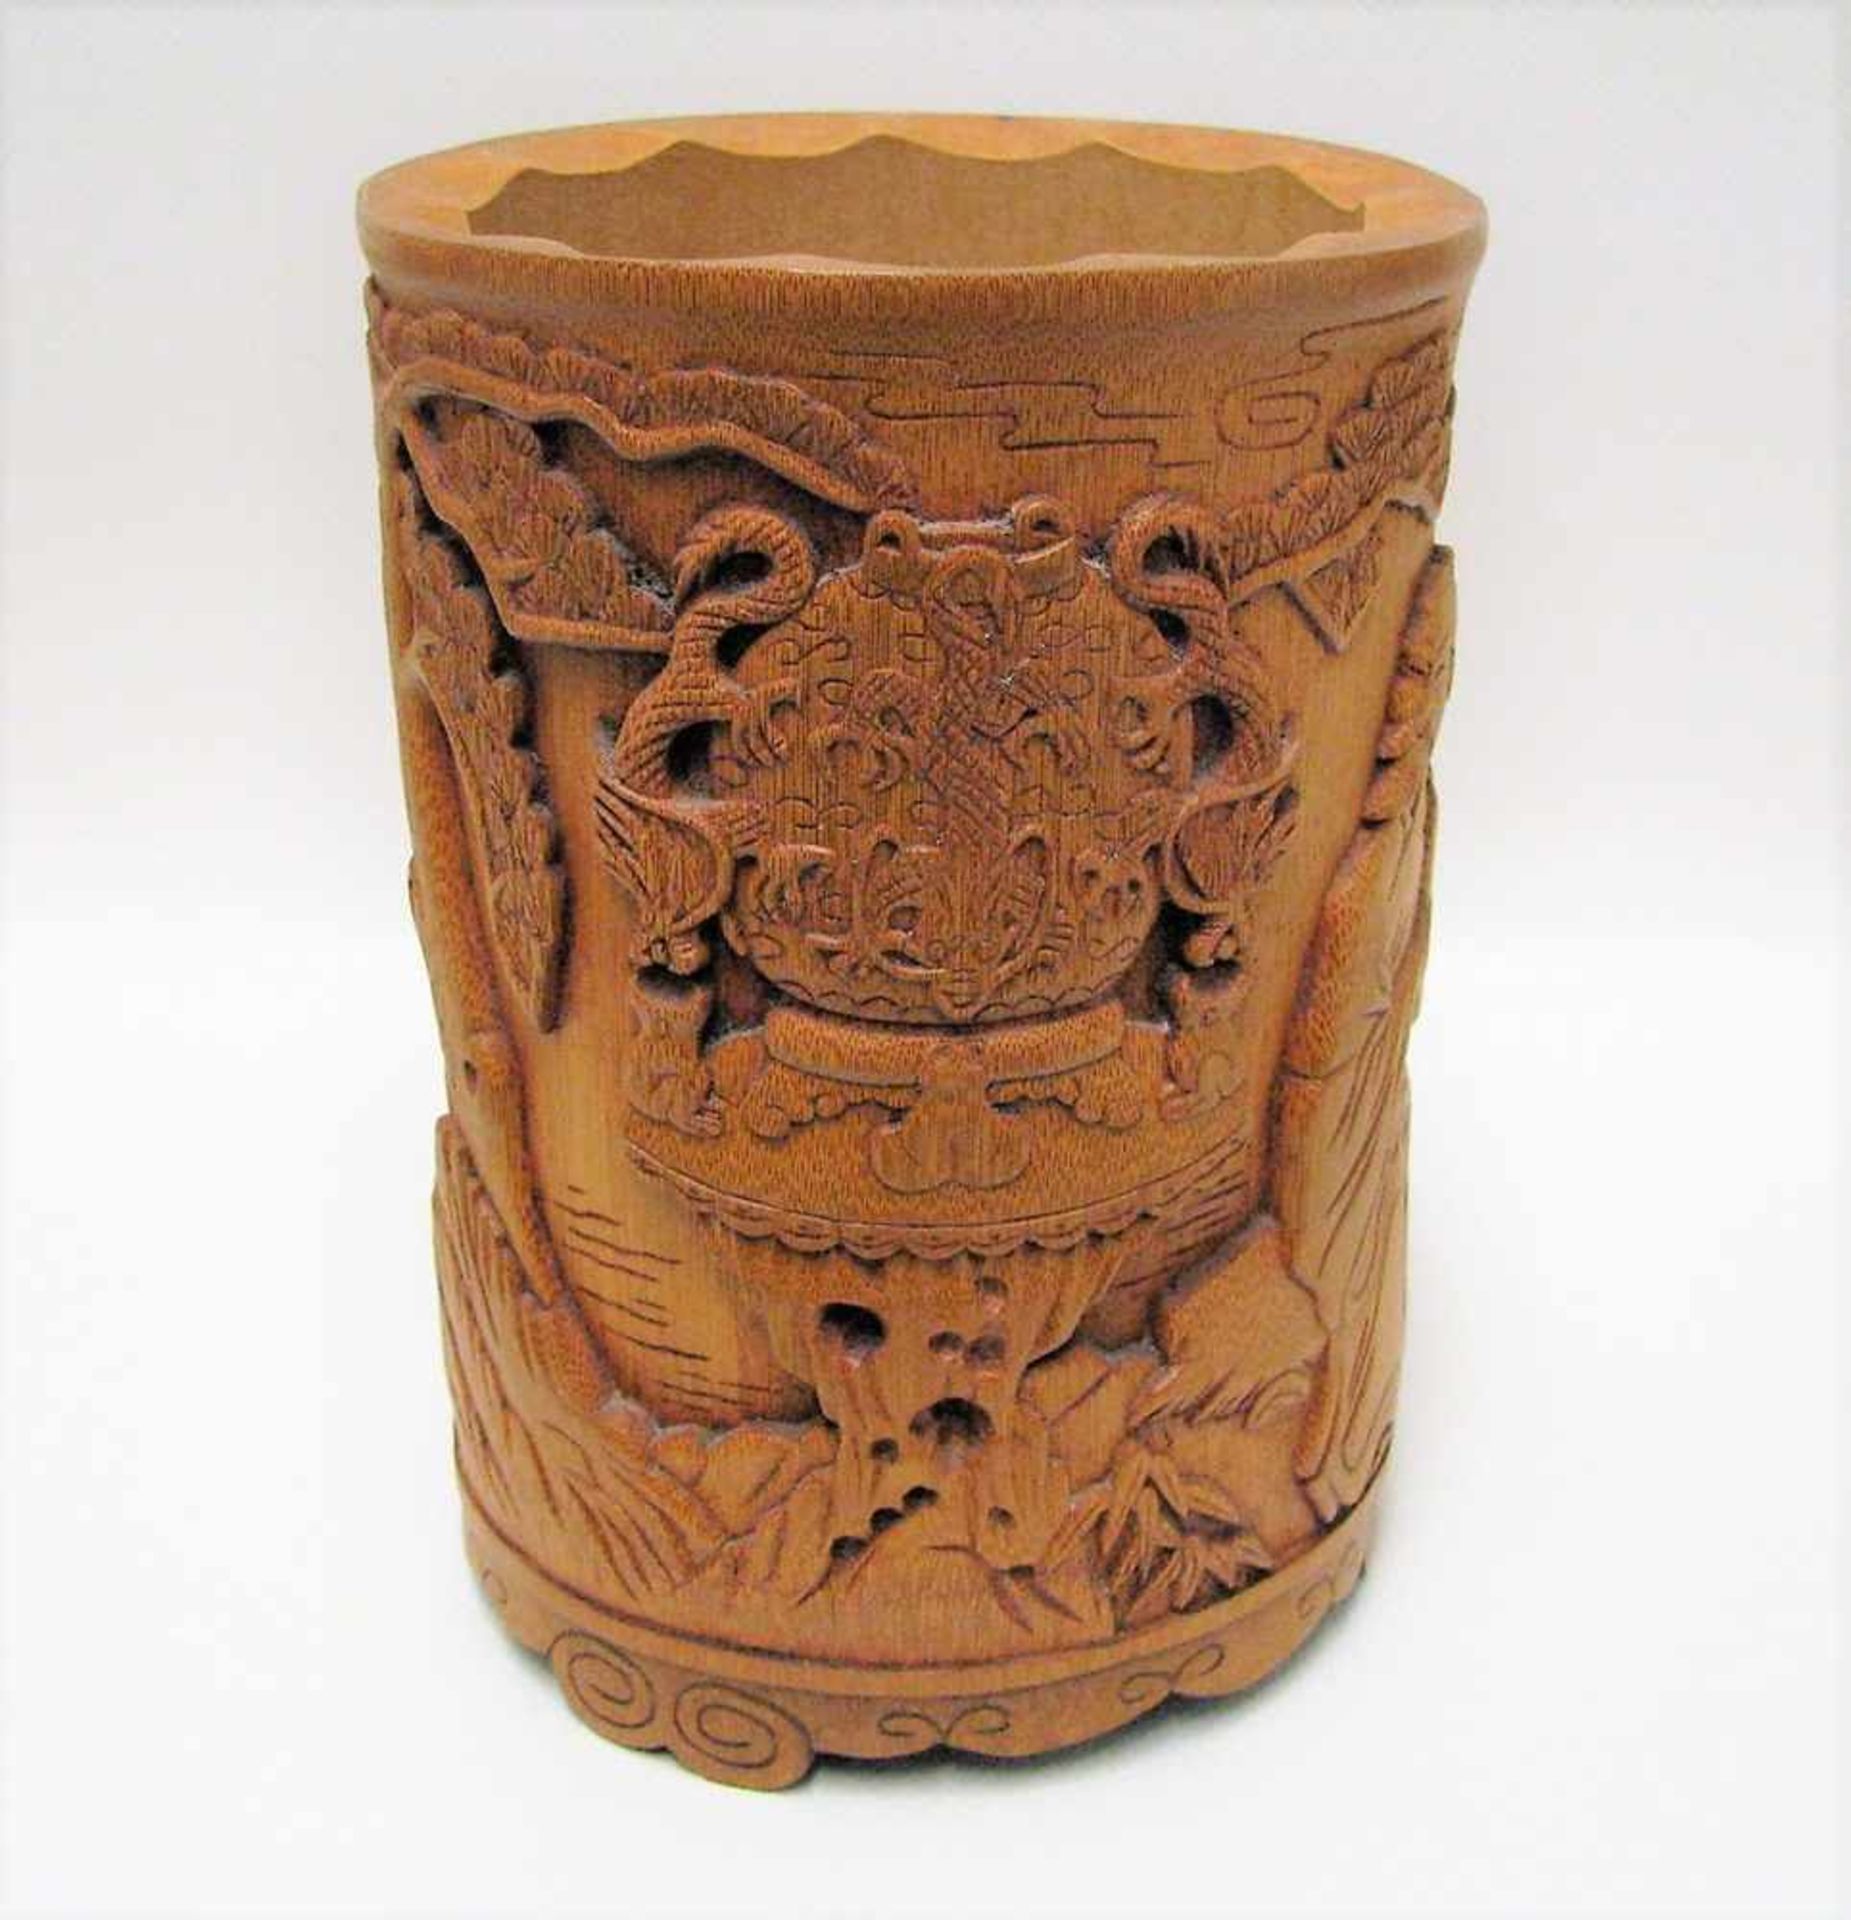 Pinselbehälter, China, Bambus fein beschnitzt, h 16,5 cm, d 12 cm.- - -19.00 % buyer's premium on